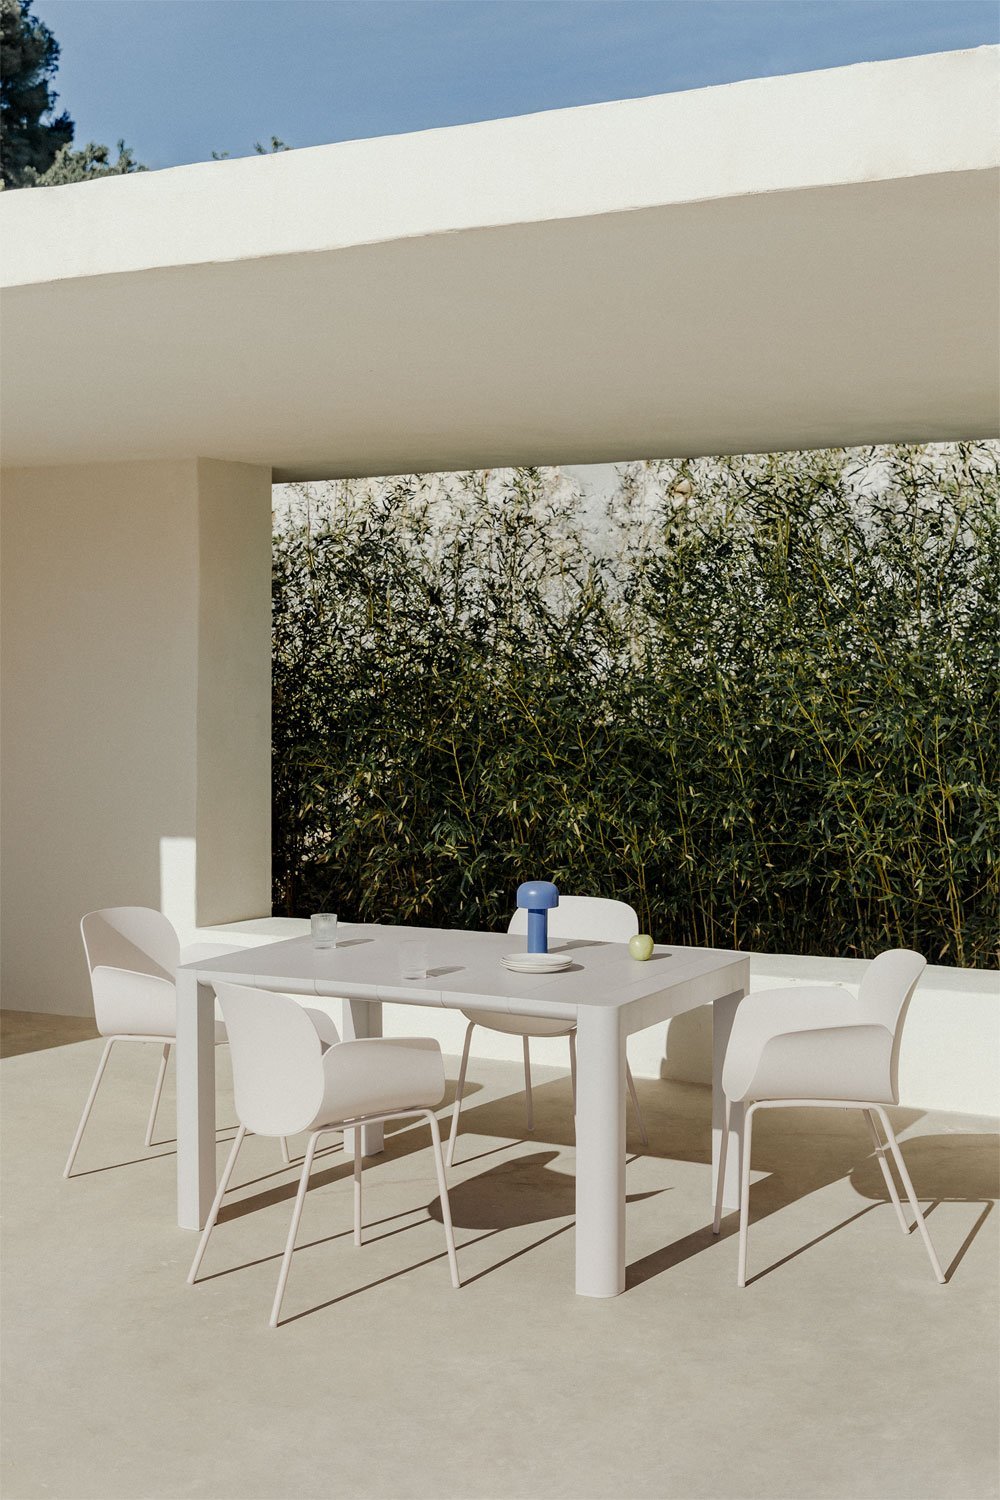 Zestaw prostokątnego stołu Arnadine (140x100 cm) i 4 krzesła ogrodowe Lynette, obrazek w galerii 1